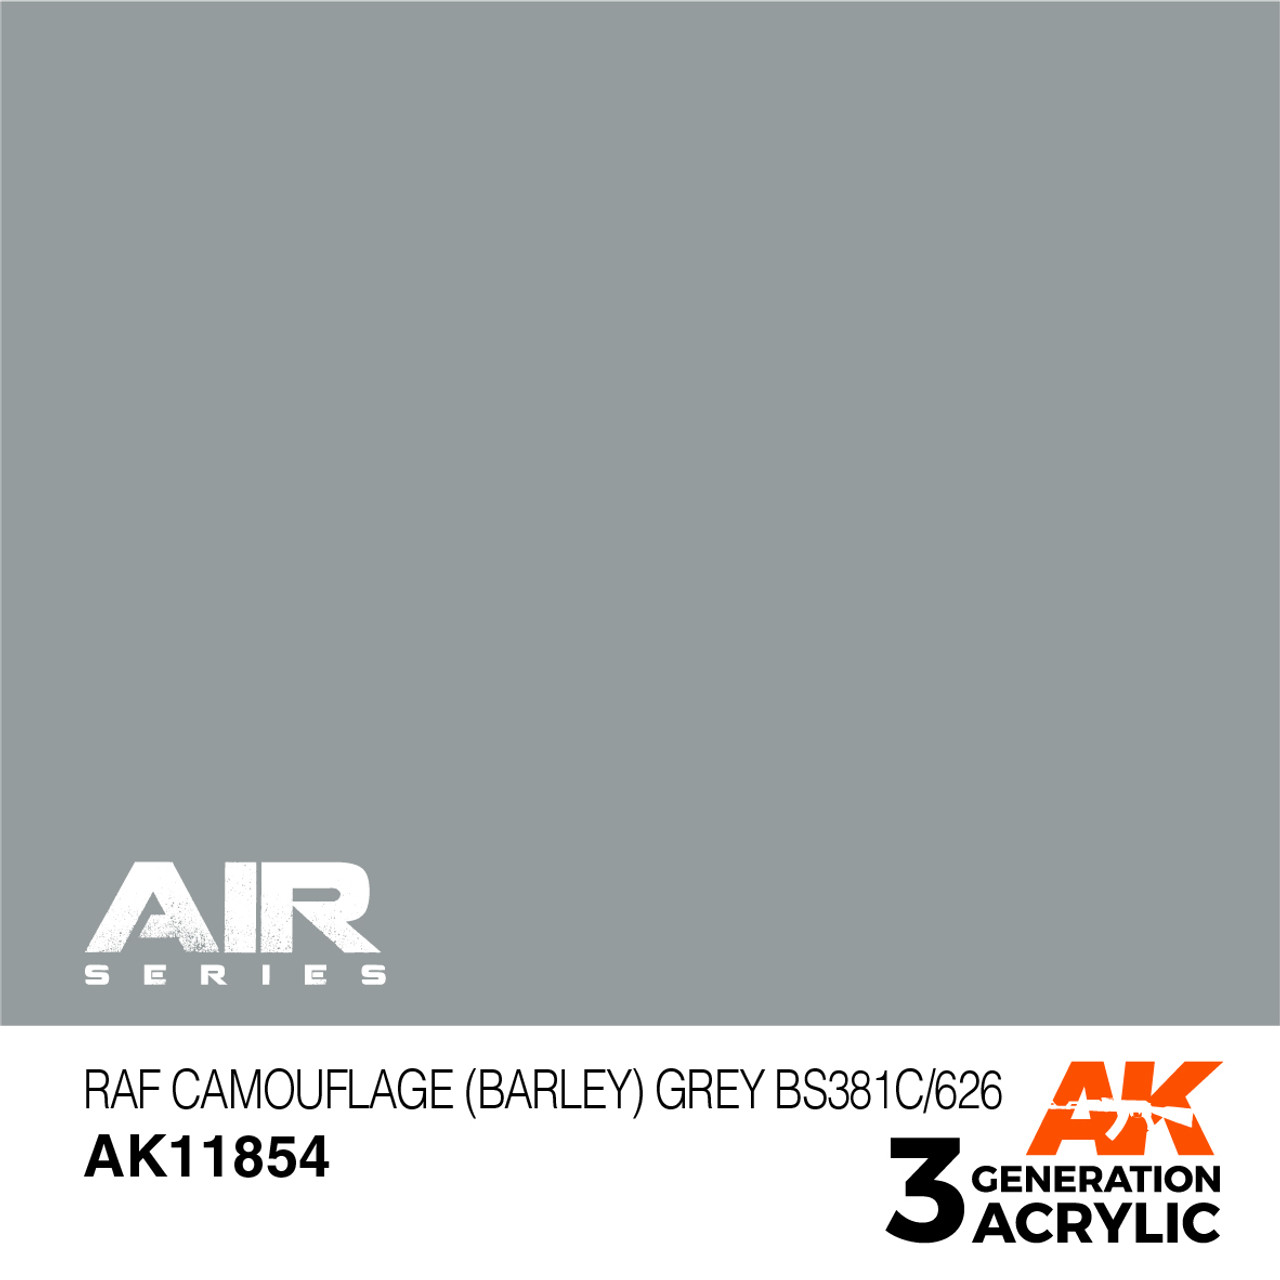 3G Air 054 - RAF Camouflage (Barley) Grey BS381C/626 - AK11854